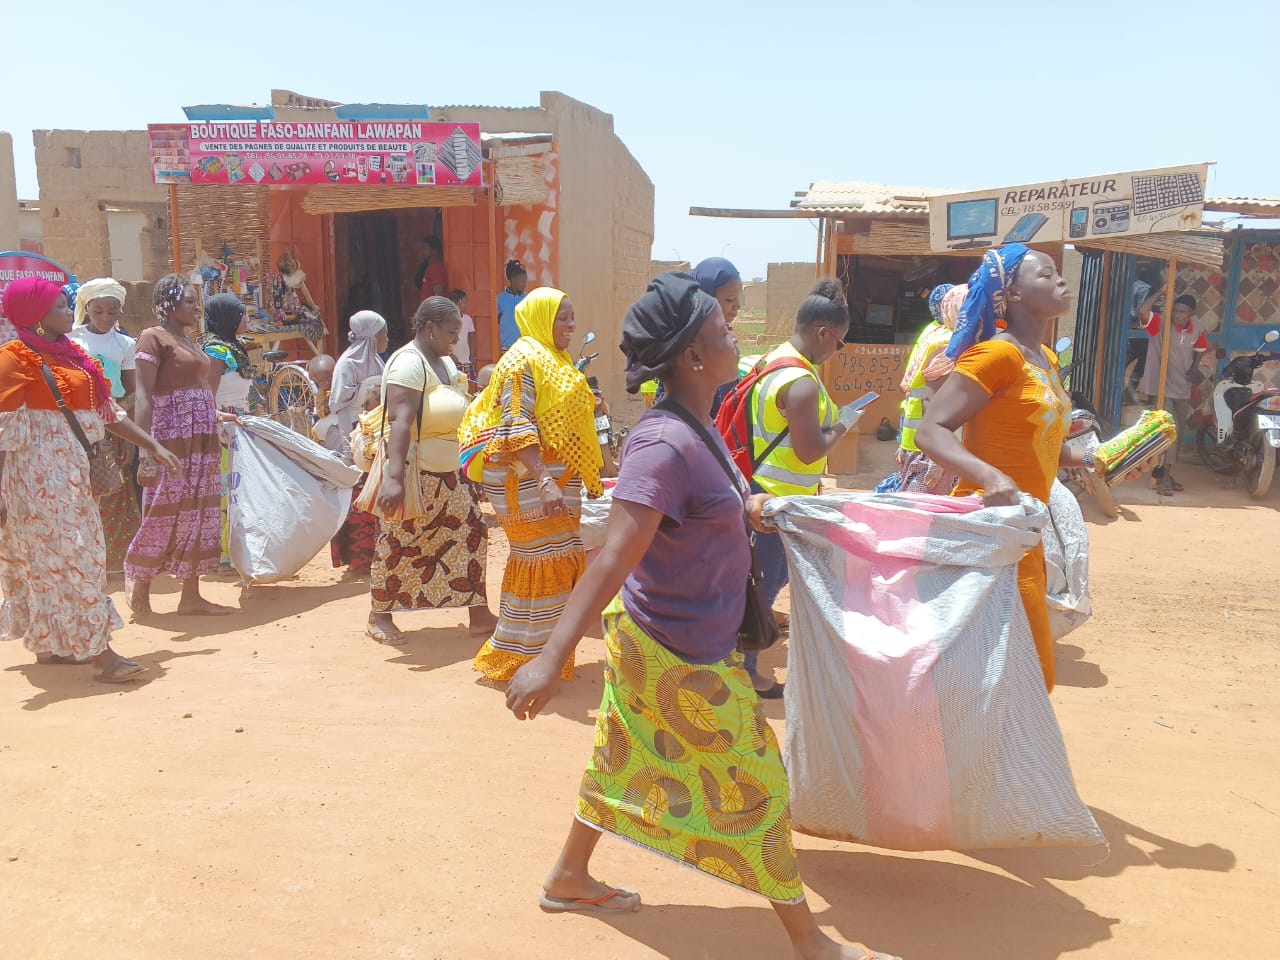 Vente des eaux en sachets au Mali : Consommer une eau non sûre et